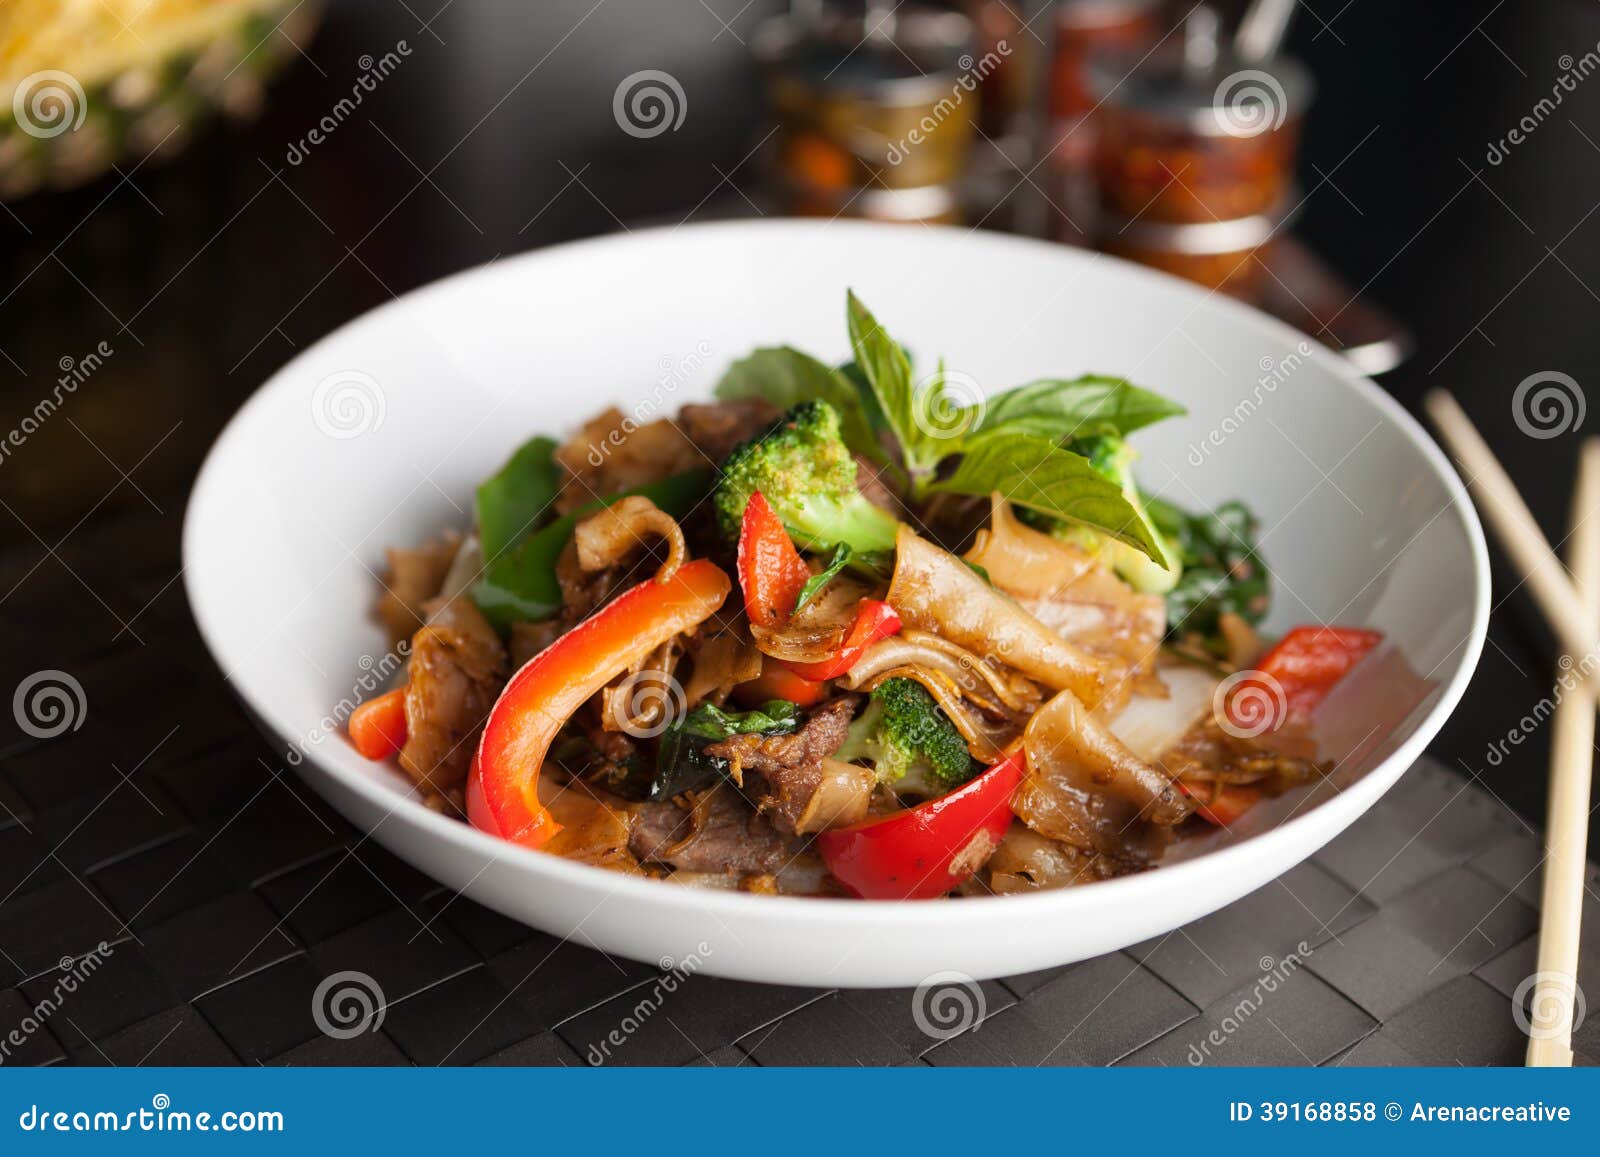 drunken noodle thai food